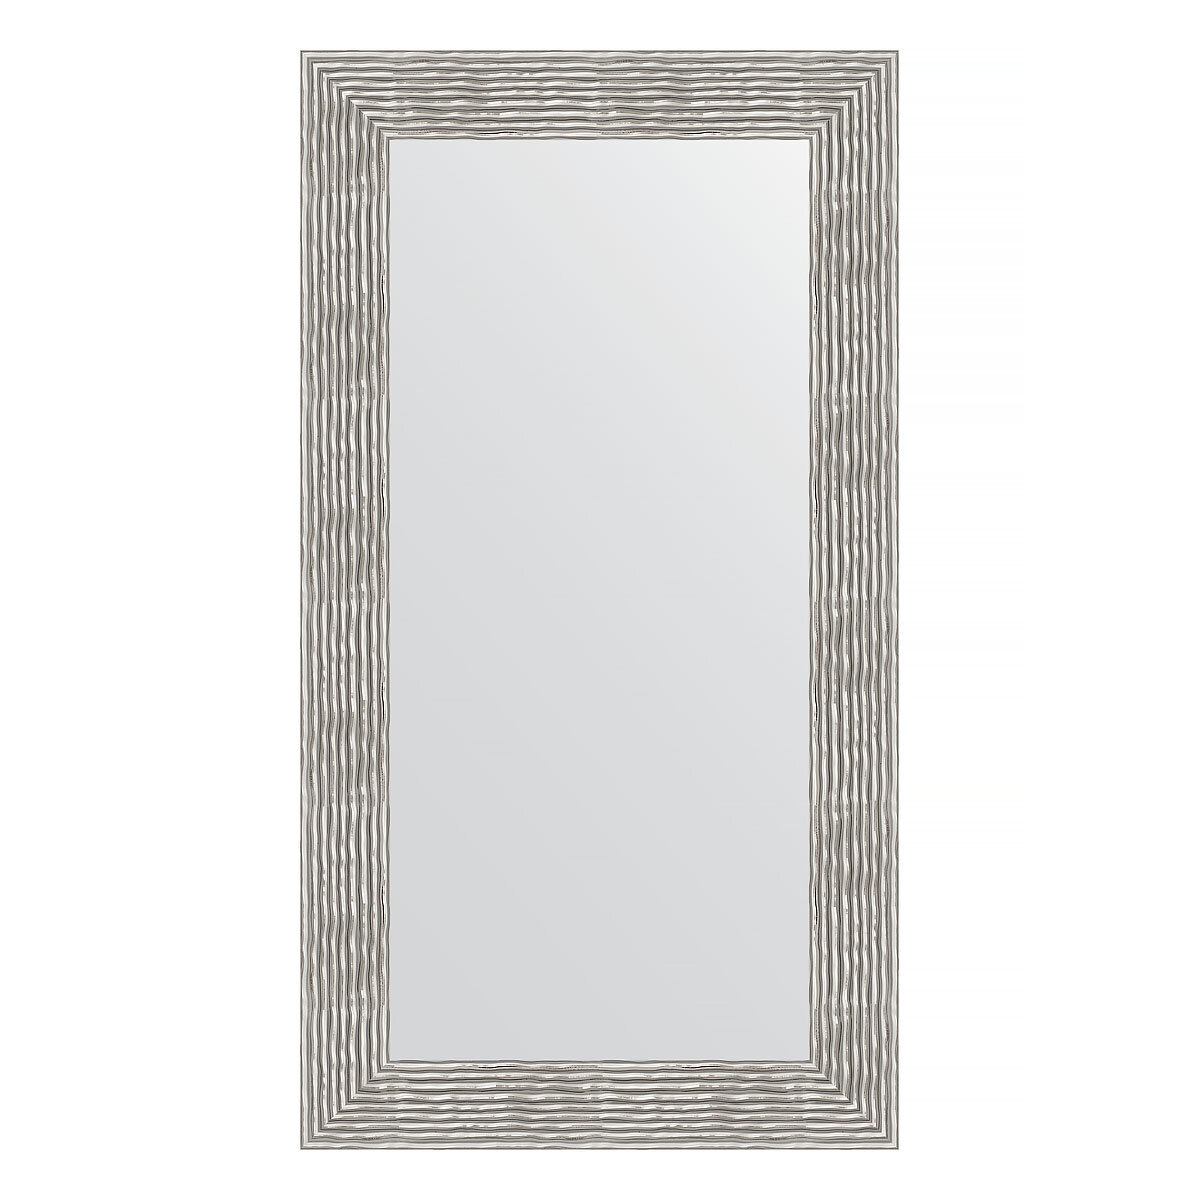 Зеркало настенное EVOFORM в багетной раме волна хром, 60х110 см, для гостиной, прихожей, кабинета, спальни и ванной комнаты, BY 3089